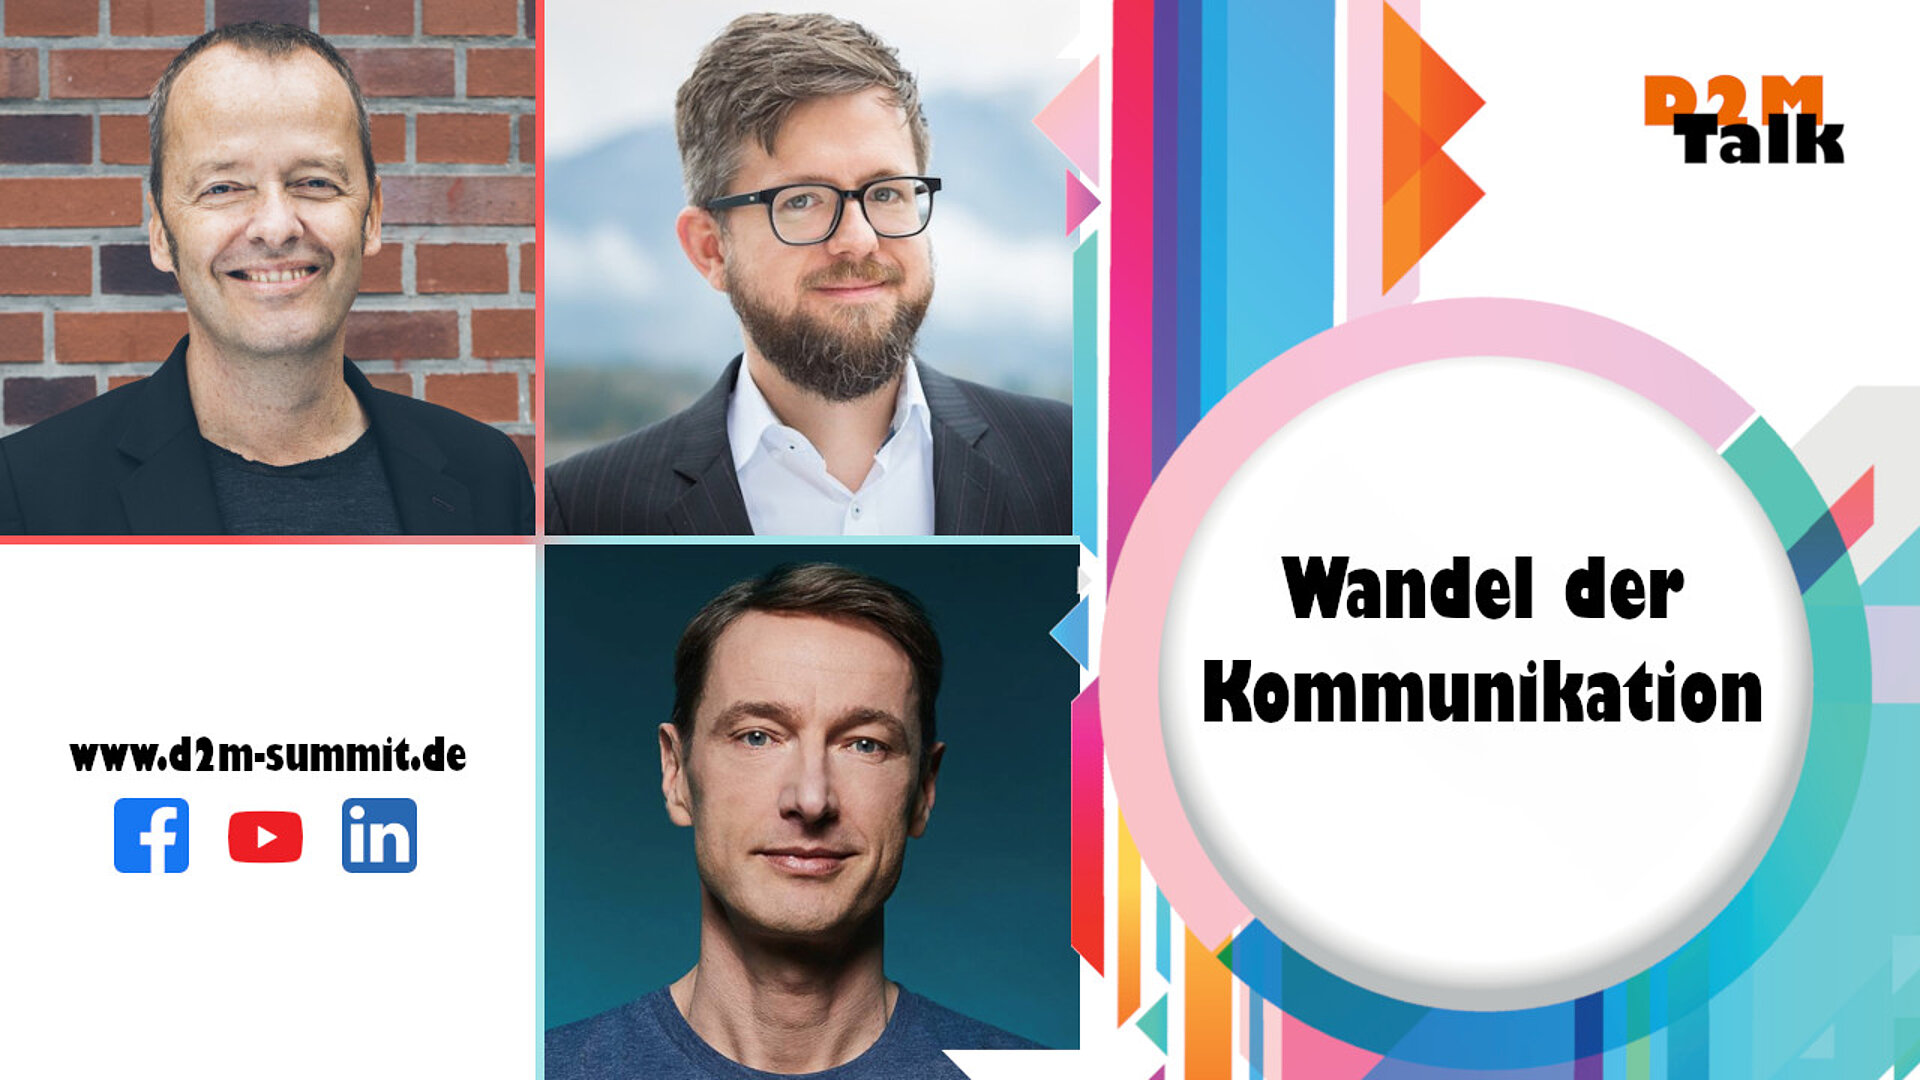 Das Kamingespräch zum Wandel der Kommunikation mit Mark Pohlmann, Jan Warp & Stephan Probst